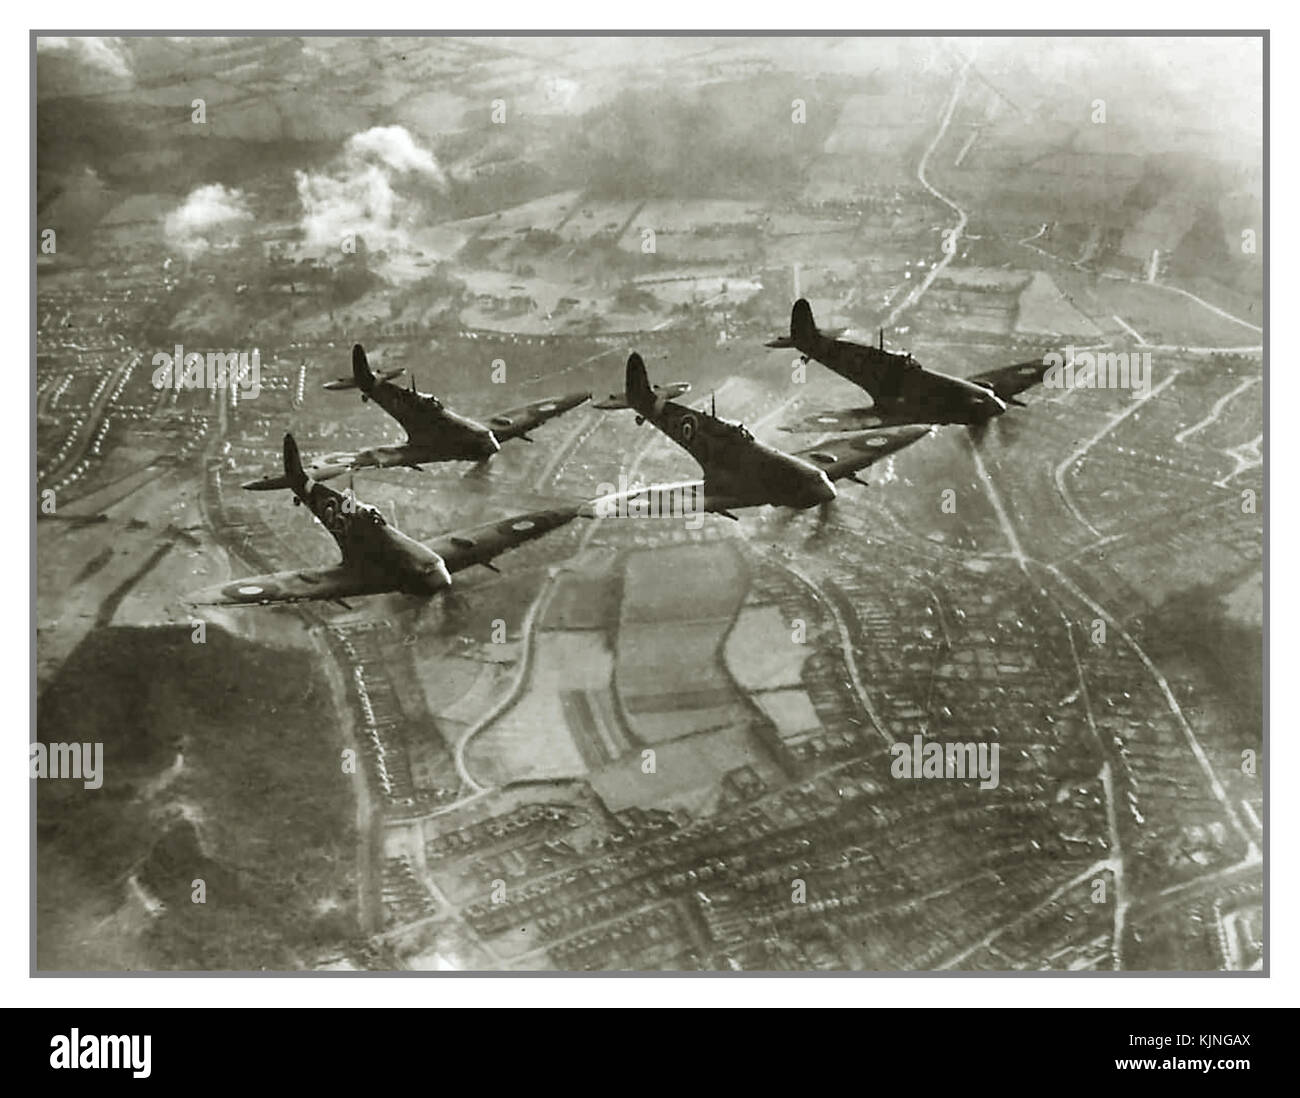 1942 Spitfire Fighter Aircraft Squadron auf Patrouille während der Schlacht von Britain' World war 2 Spitfire Flugzeuge enge Formation über die Großbritannien verteidigt gegen Nazi-deutsche Luftwaffe Bombardierung Luftangriffe und V1 ‘dodlebug’ Raketen, die abgeschossen oder gekippt werden würde Durch Flügel von Kurs .WW2 Stockfoto